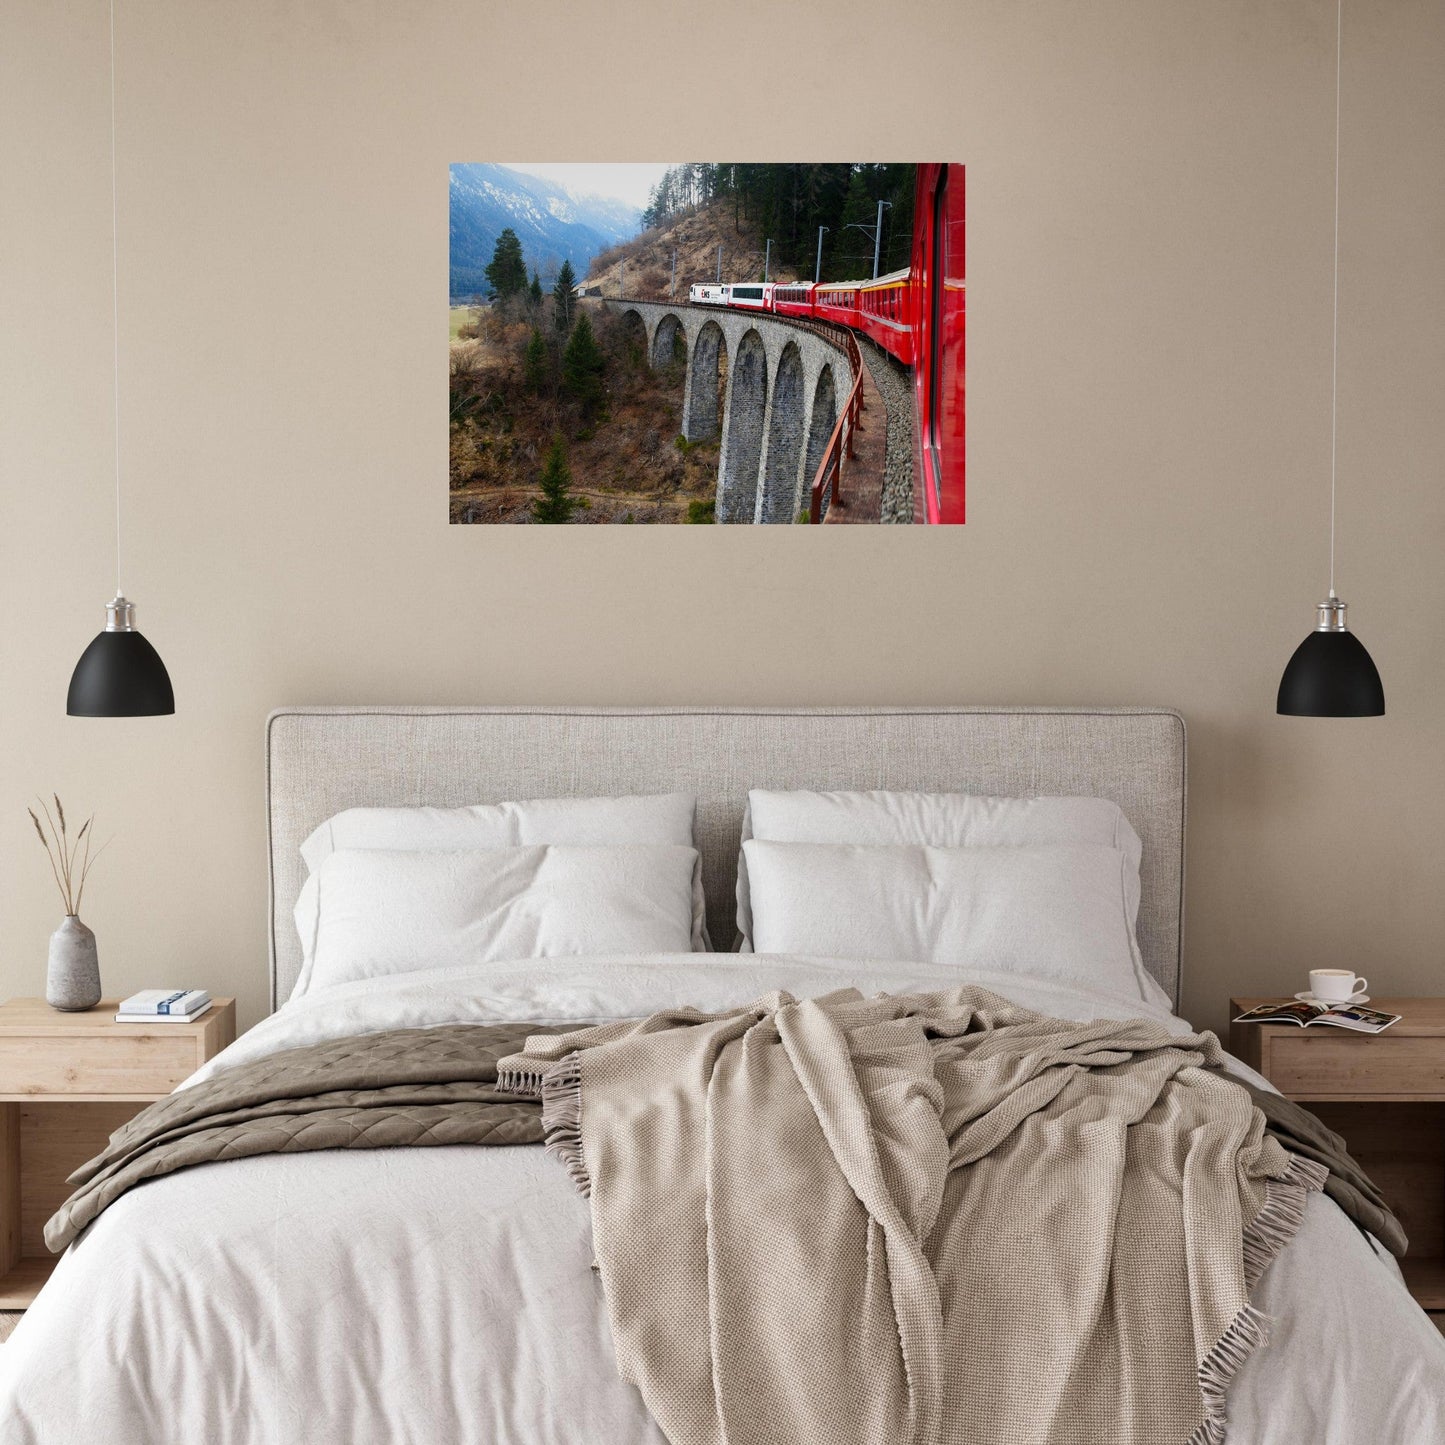 Vente Photo d'un train sur le Viaduc de Landwasser, Suisse #6 - Tableau photo paysage